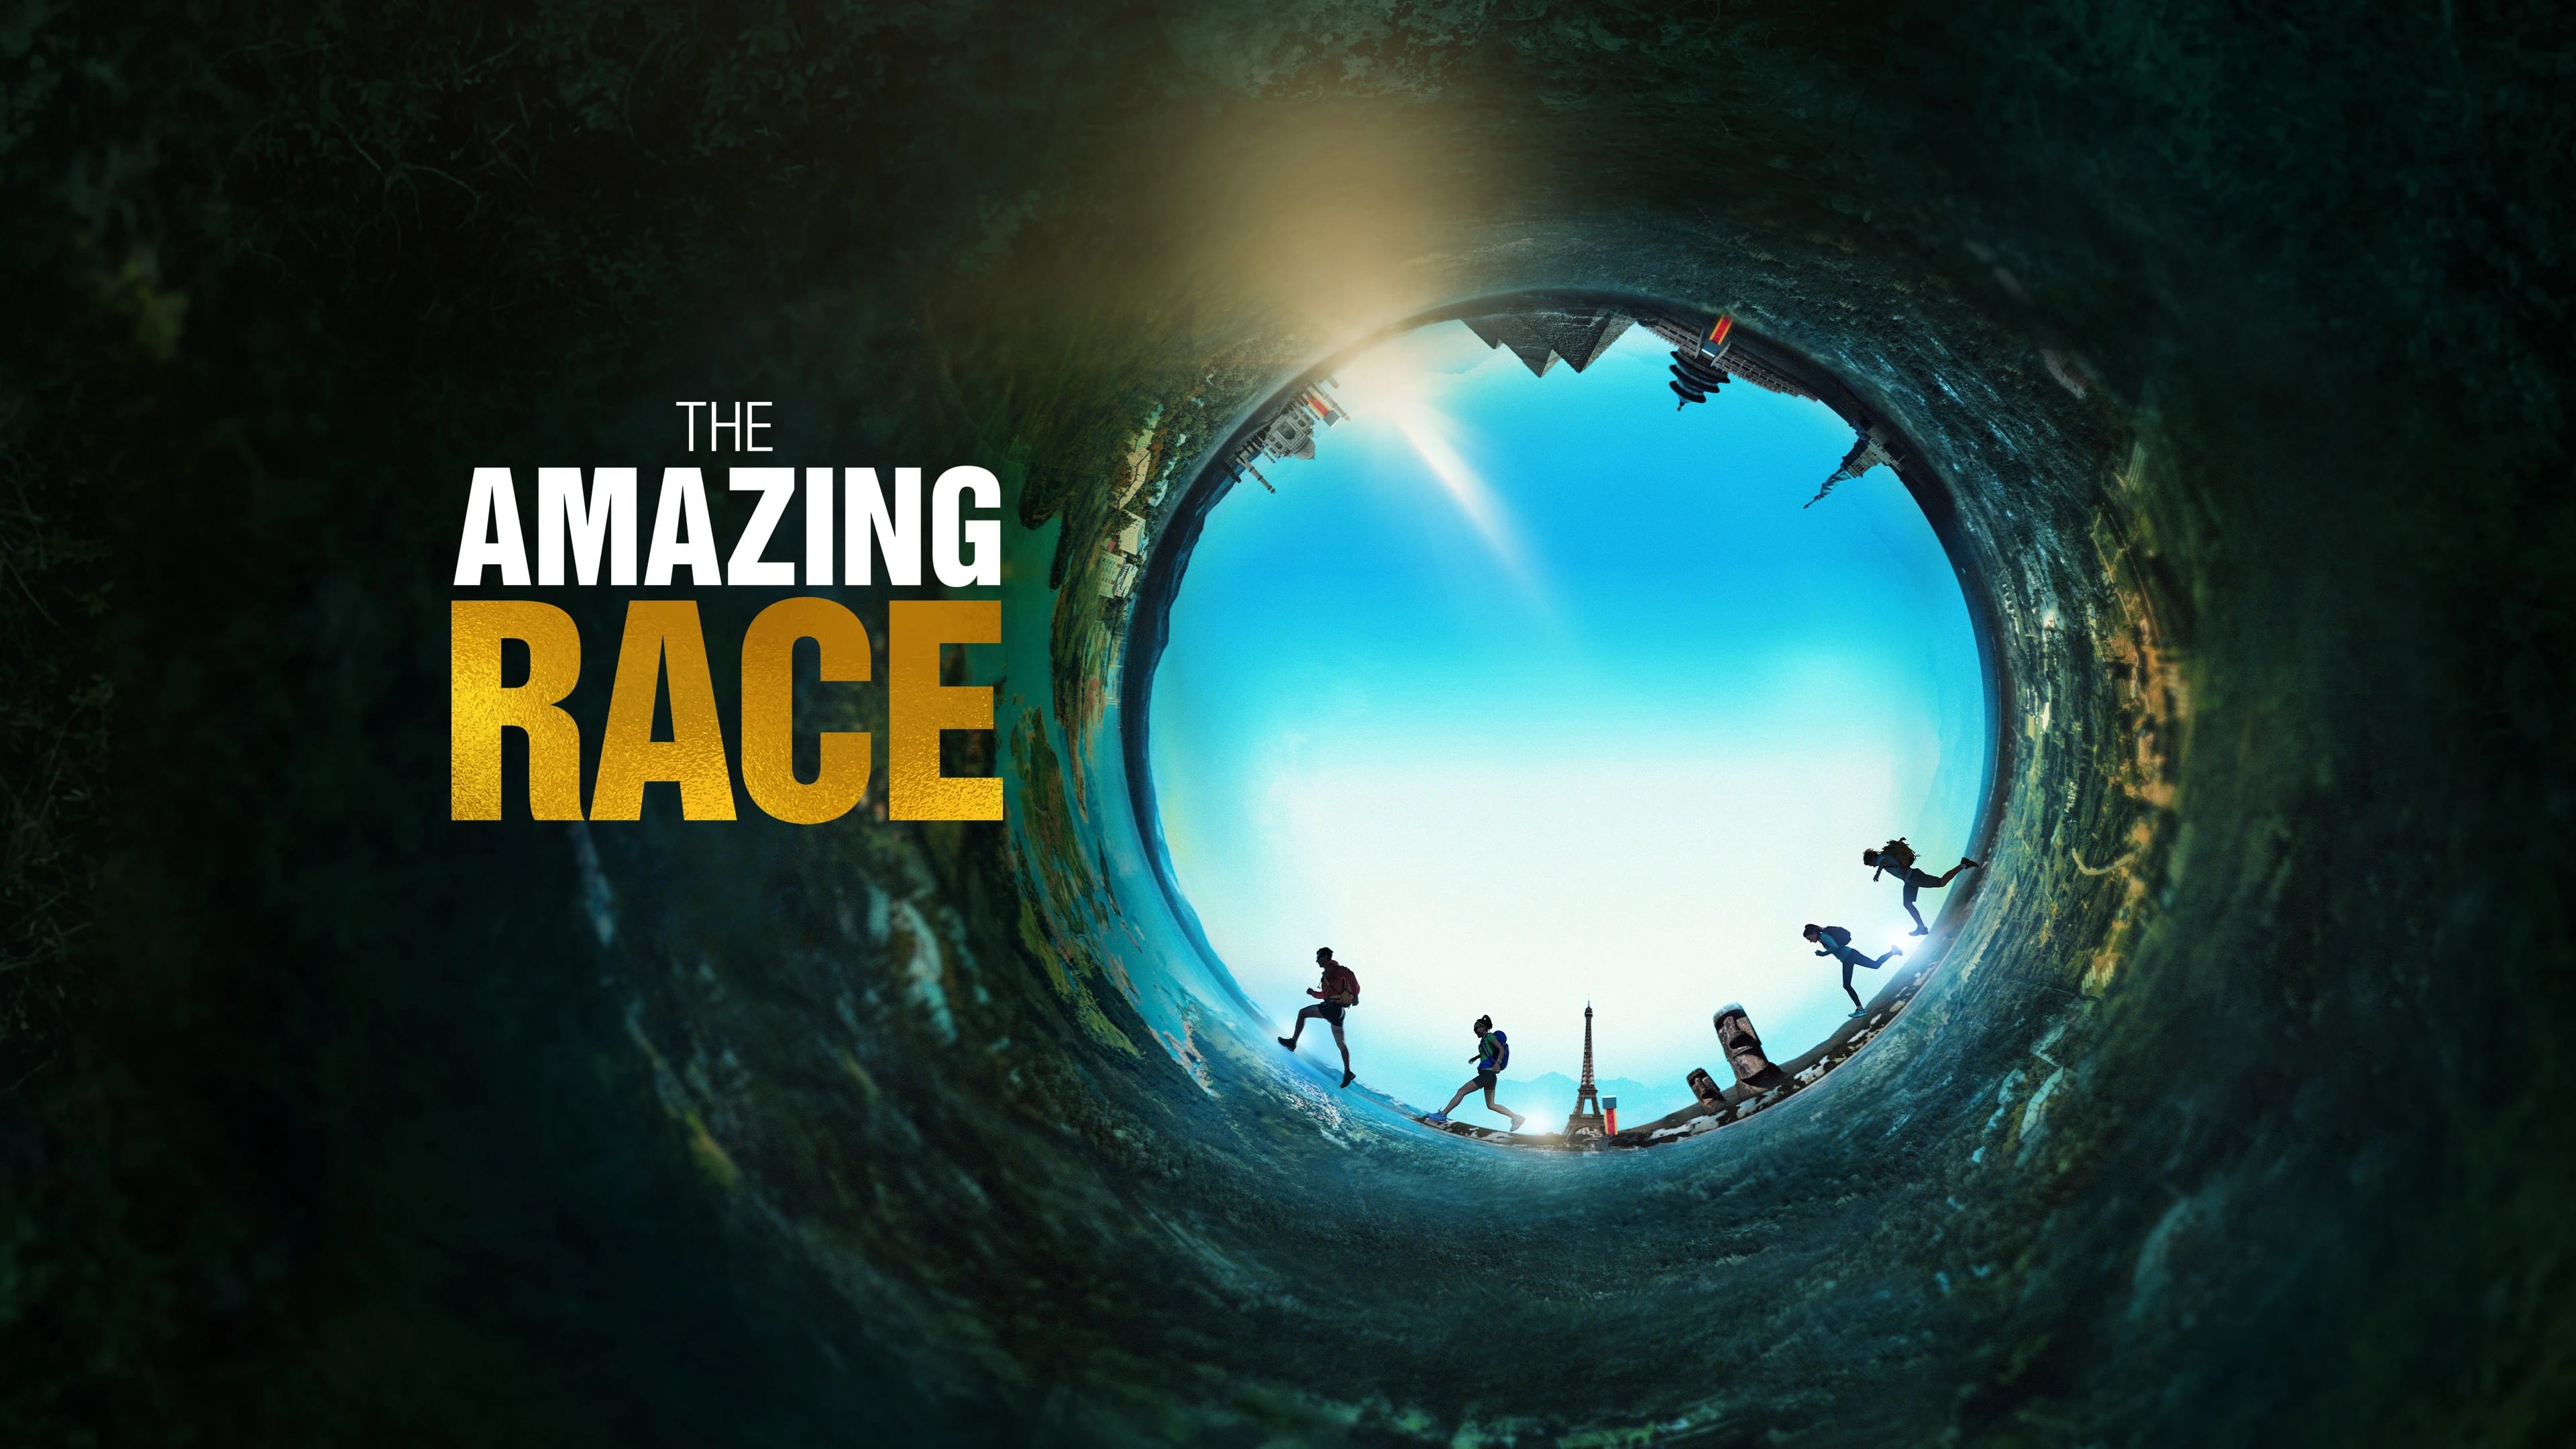 The Amazing Race - Season 9 Episode 12